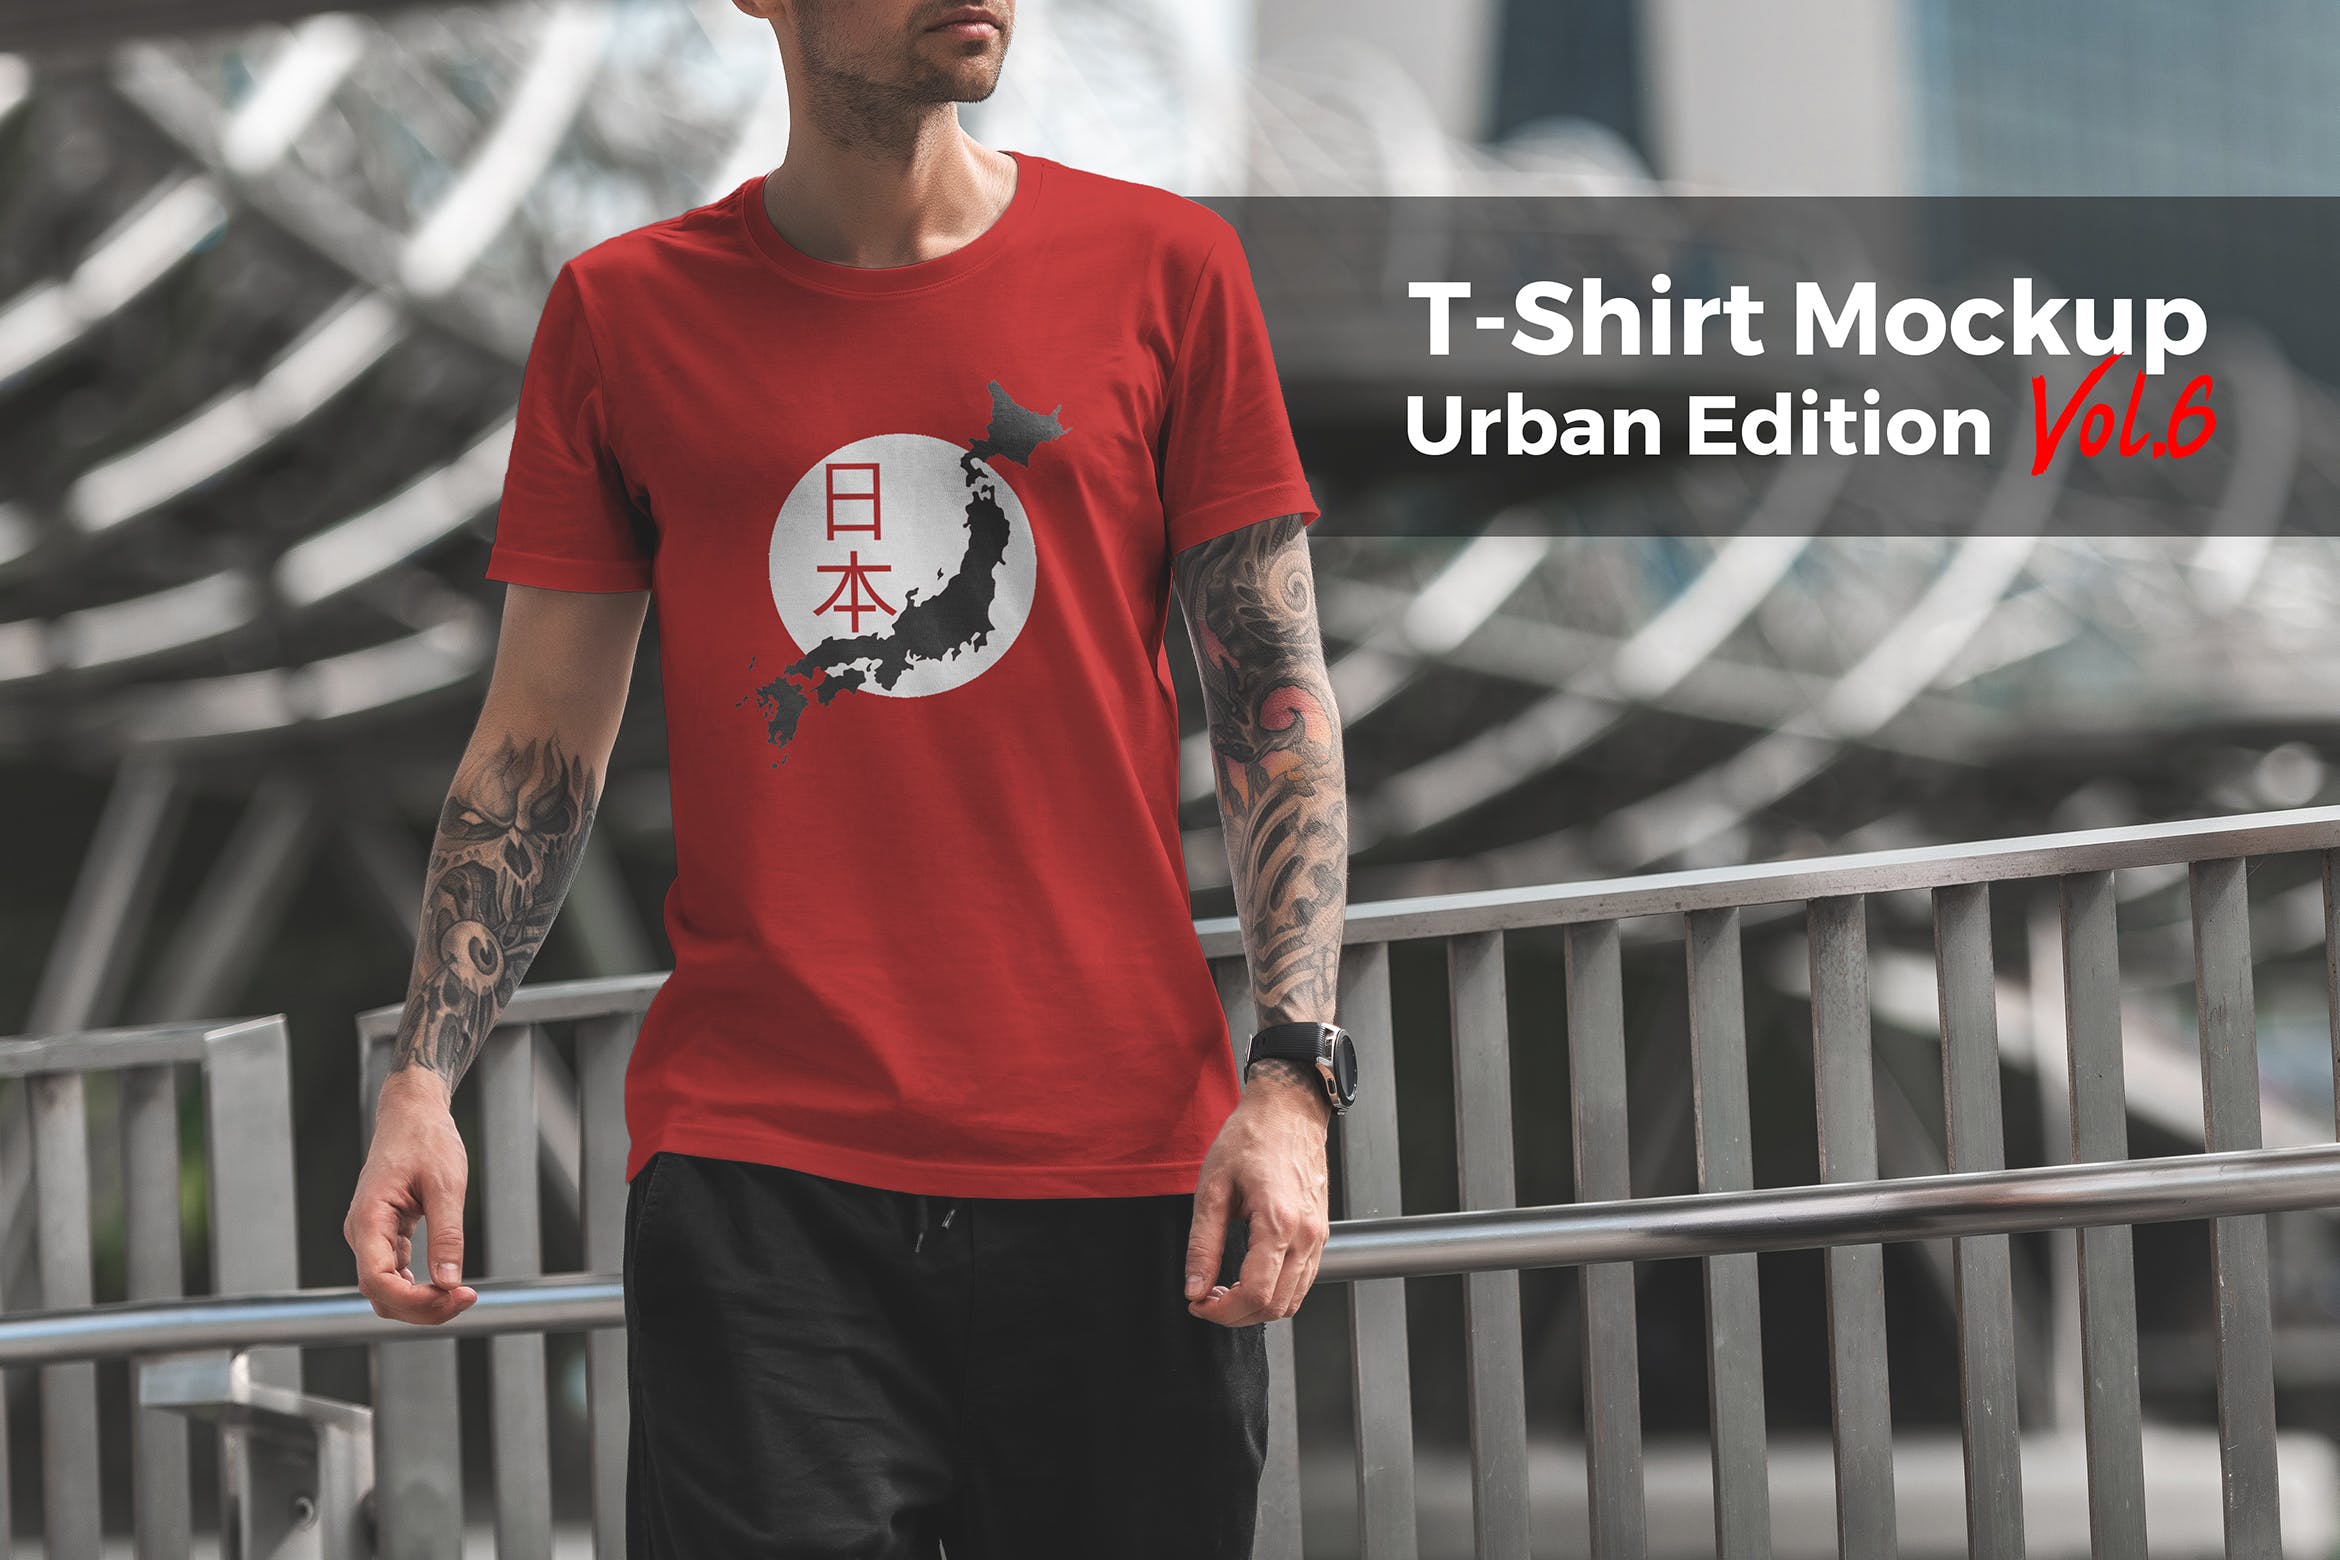 城市系列-印花T恤产品展示样机16设计网精选模板v6 T-Shirt Mockup Urban Edition Vol. 6插图